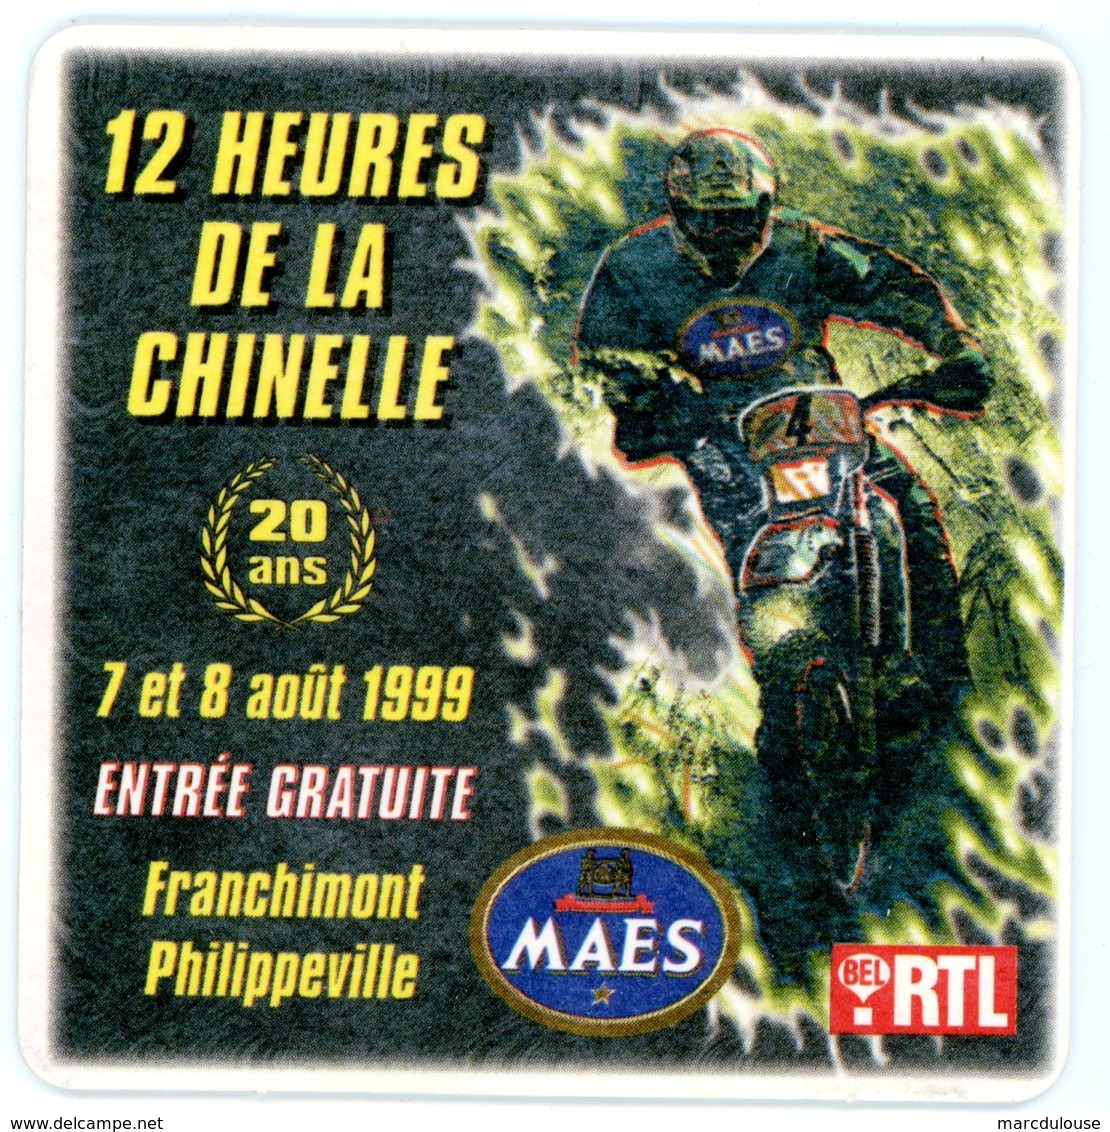 Belgium. 12 Heures De La Chinelle. 20 Ans. 7 Et 8 Août 1999. Franchimont. Philippeville. Maes. Bel RTL. Moto. - Sous-bocks